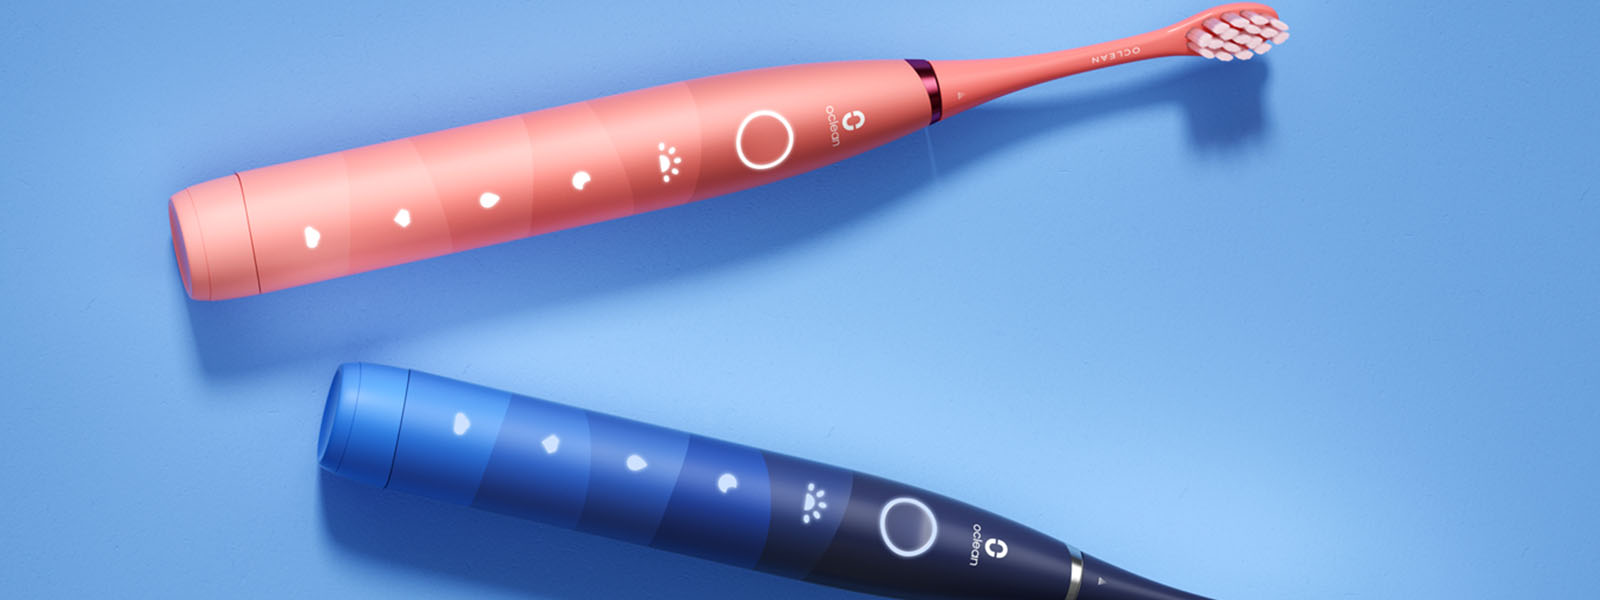 Электрическая зубная щетка Oclean Find Duo Set Red and Blue - красная и синяя 2 шт